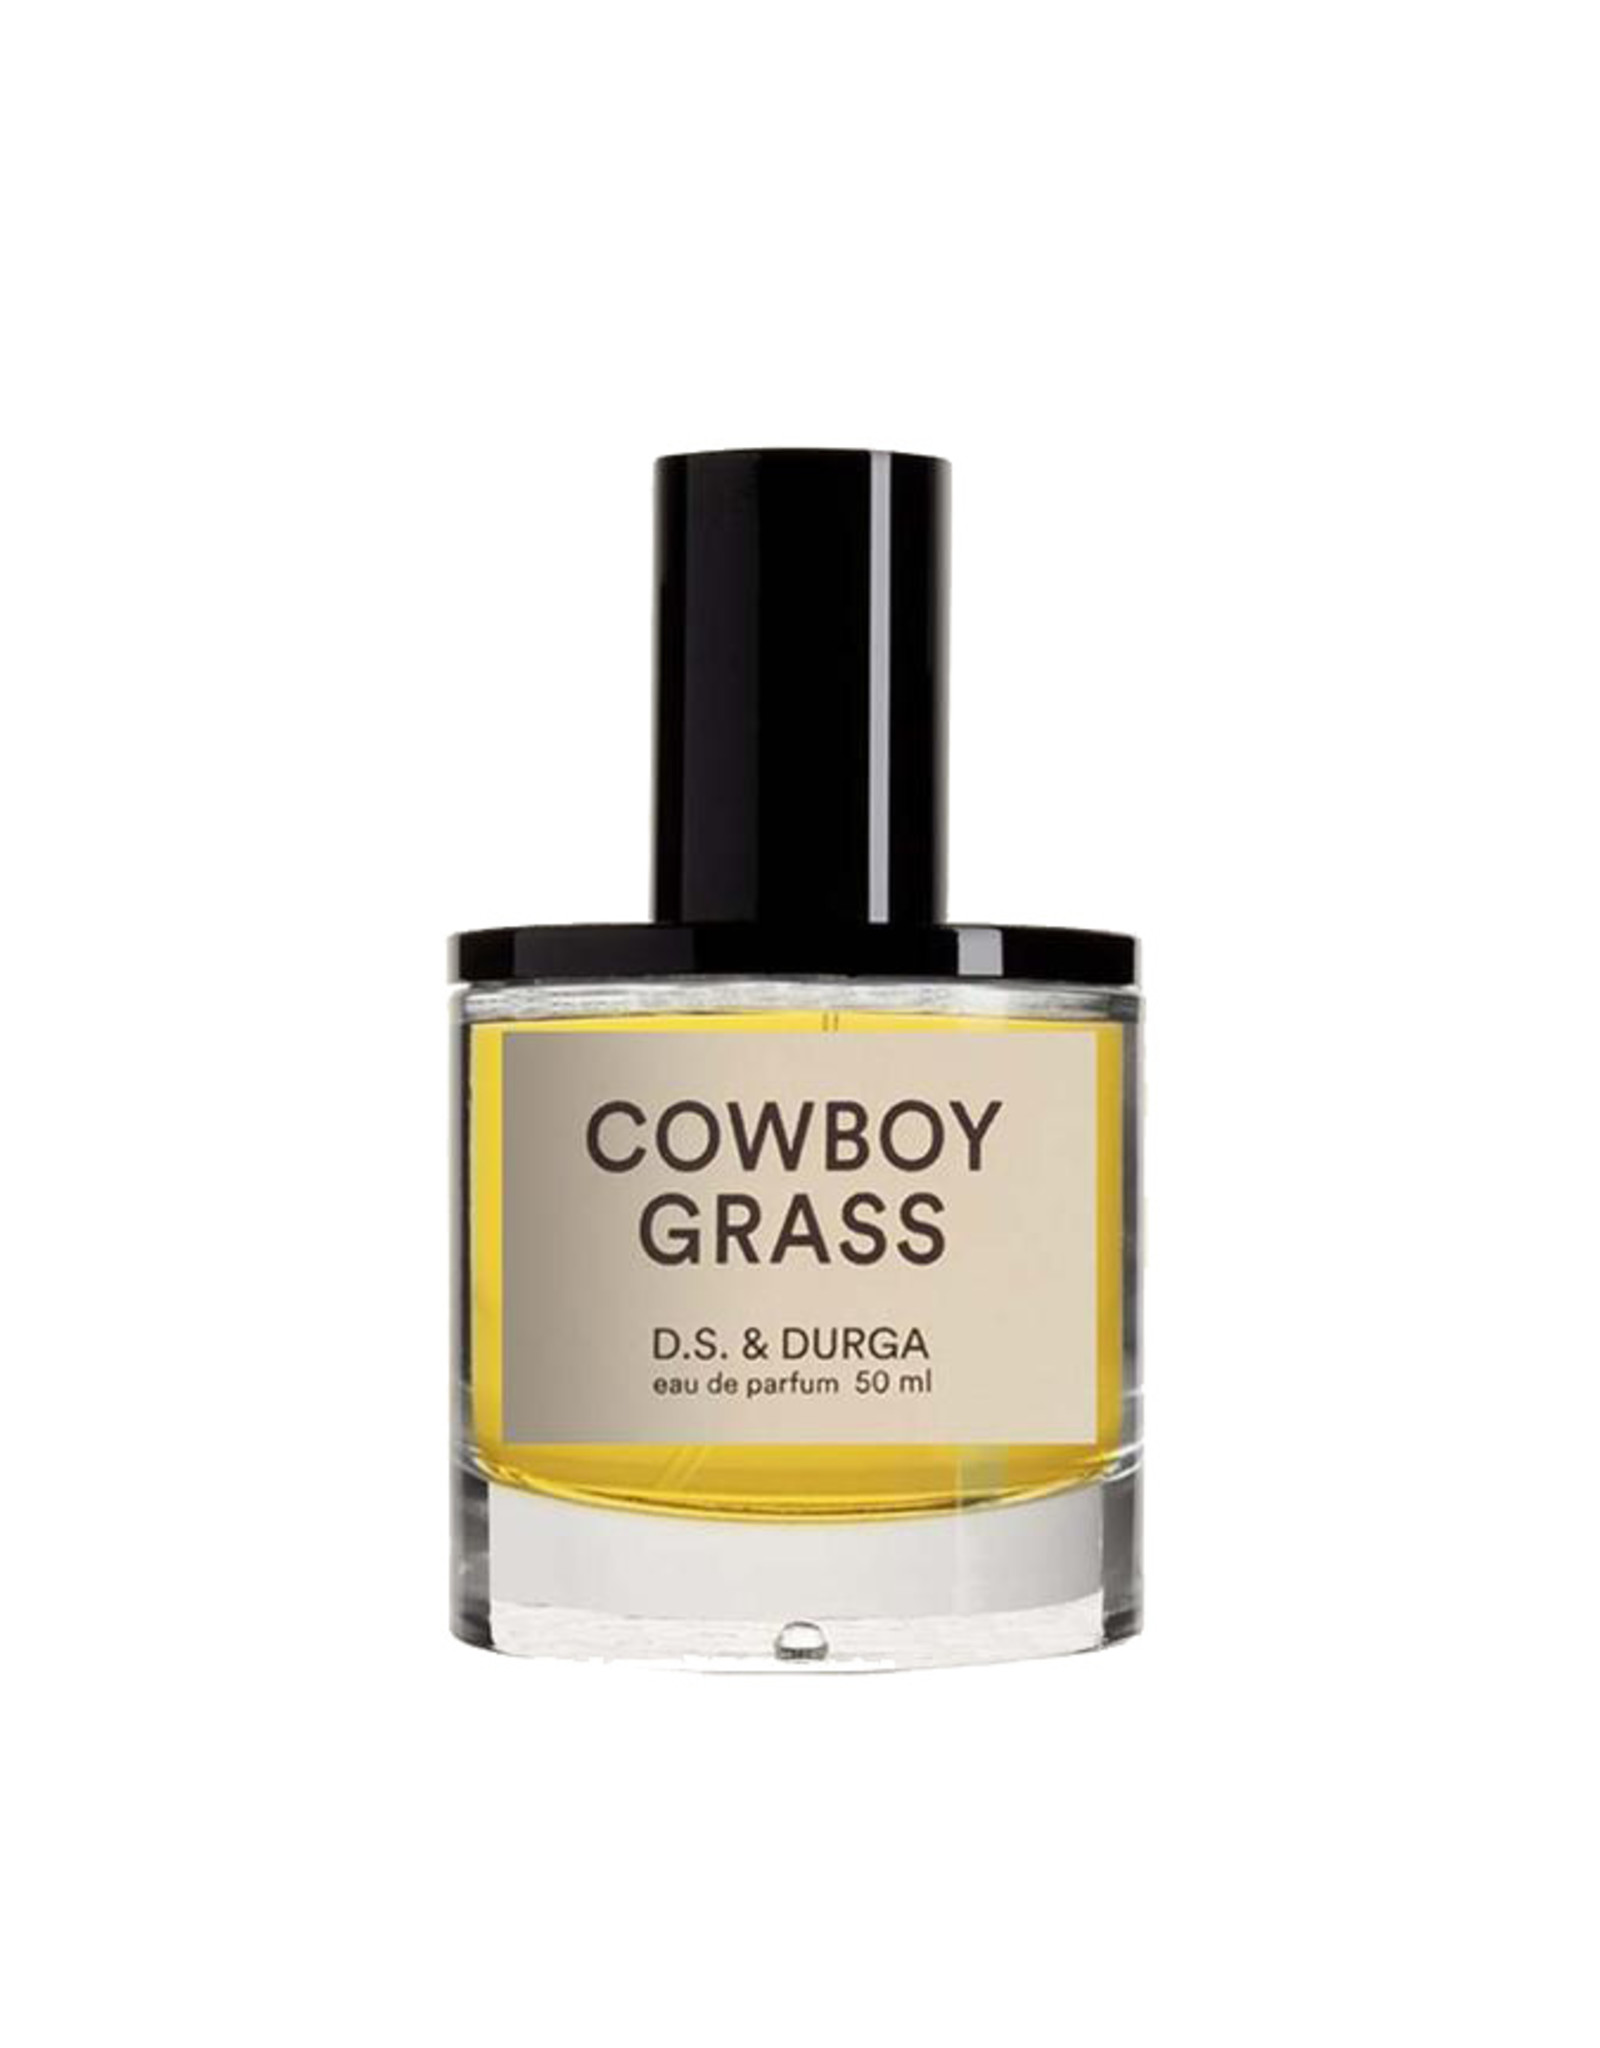 D.S. & DURGA Cowboy Grass - Eau de Parfum - 50mL